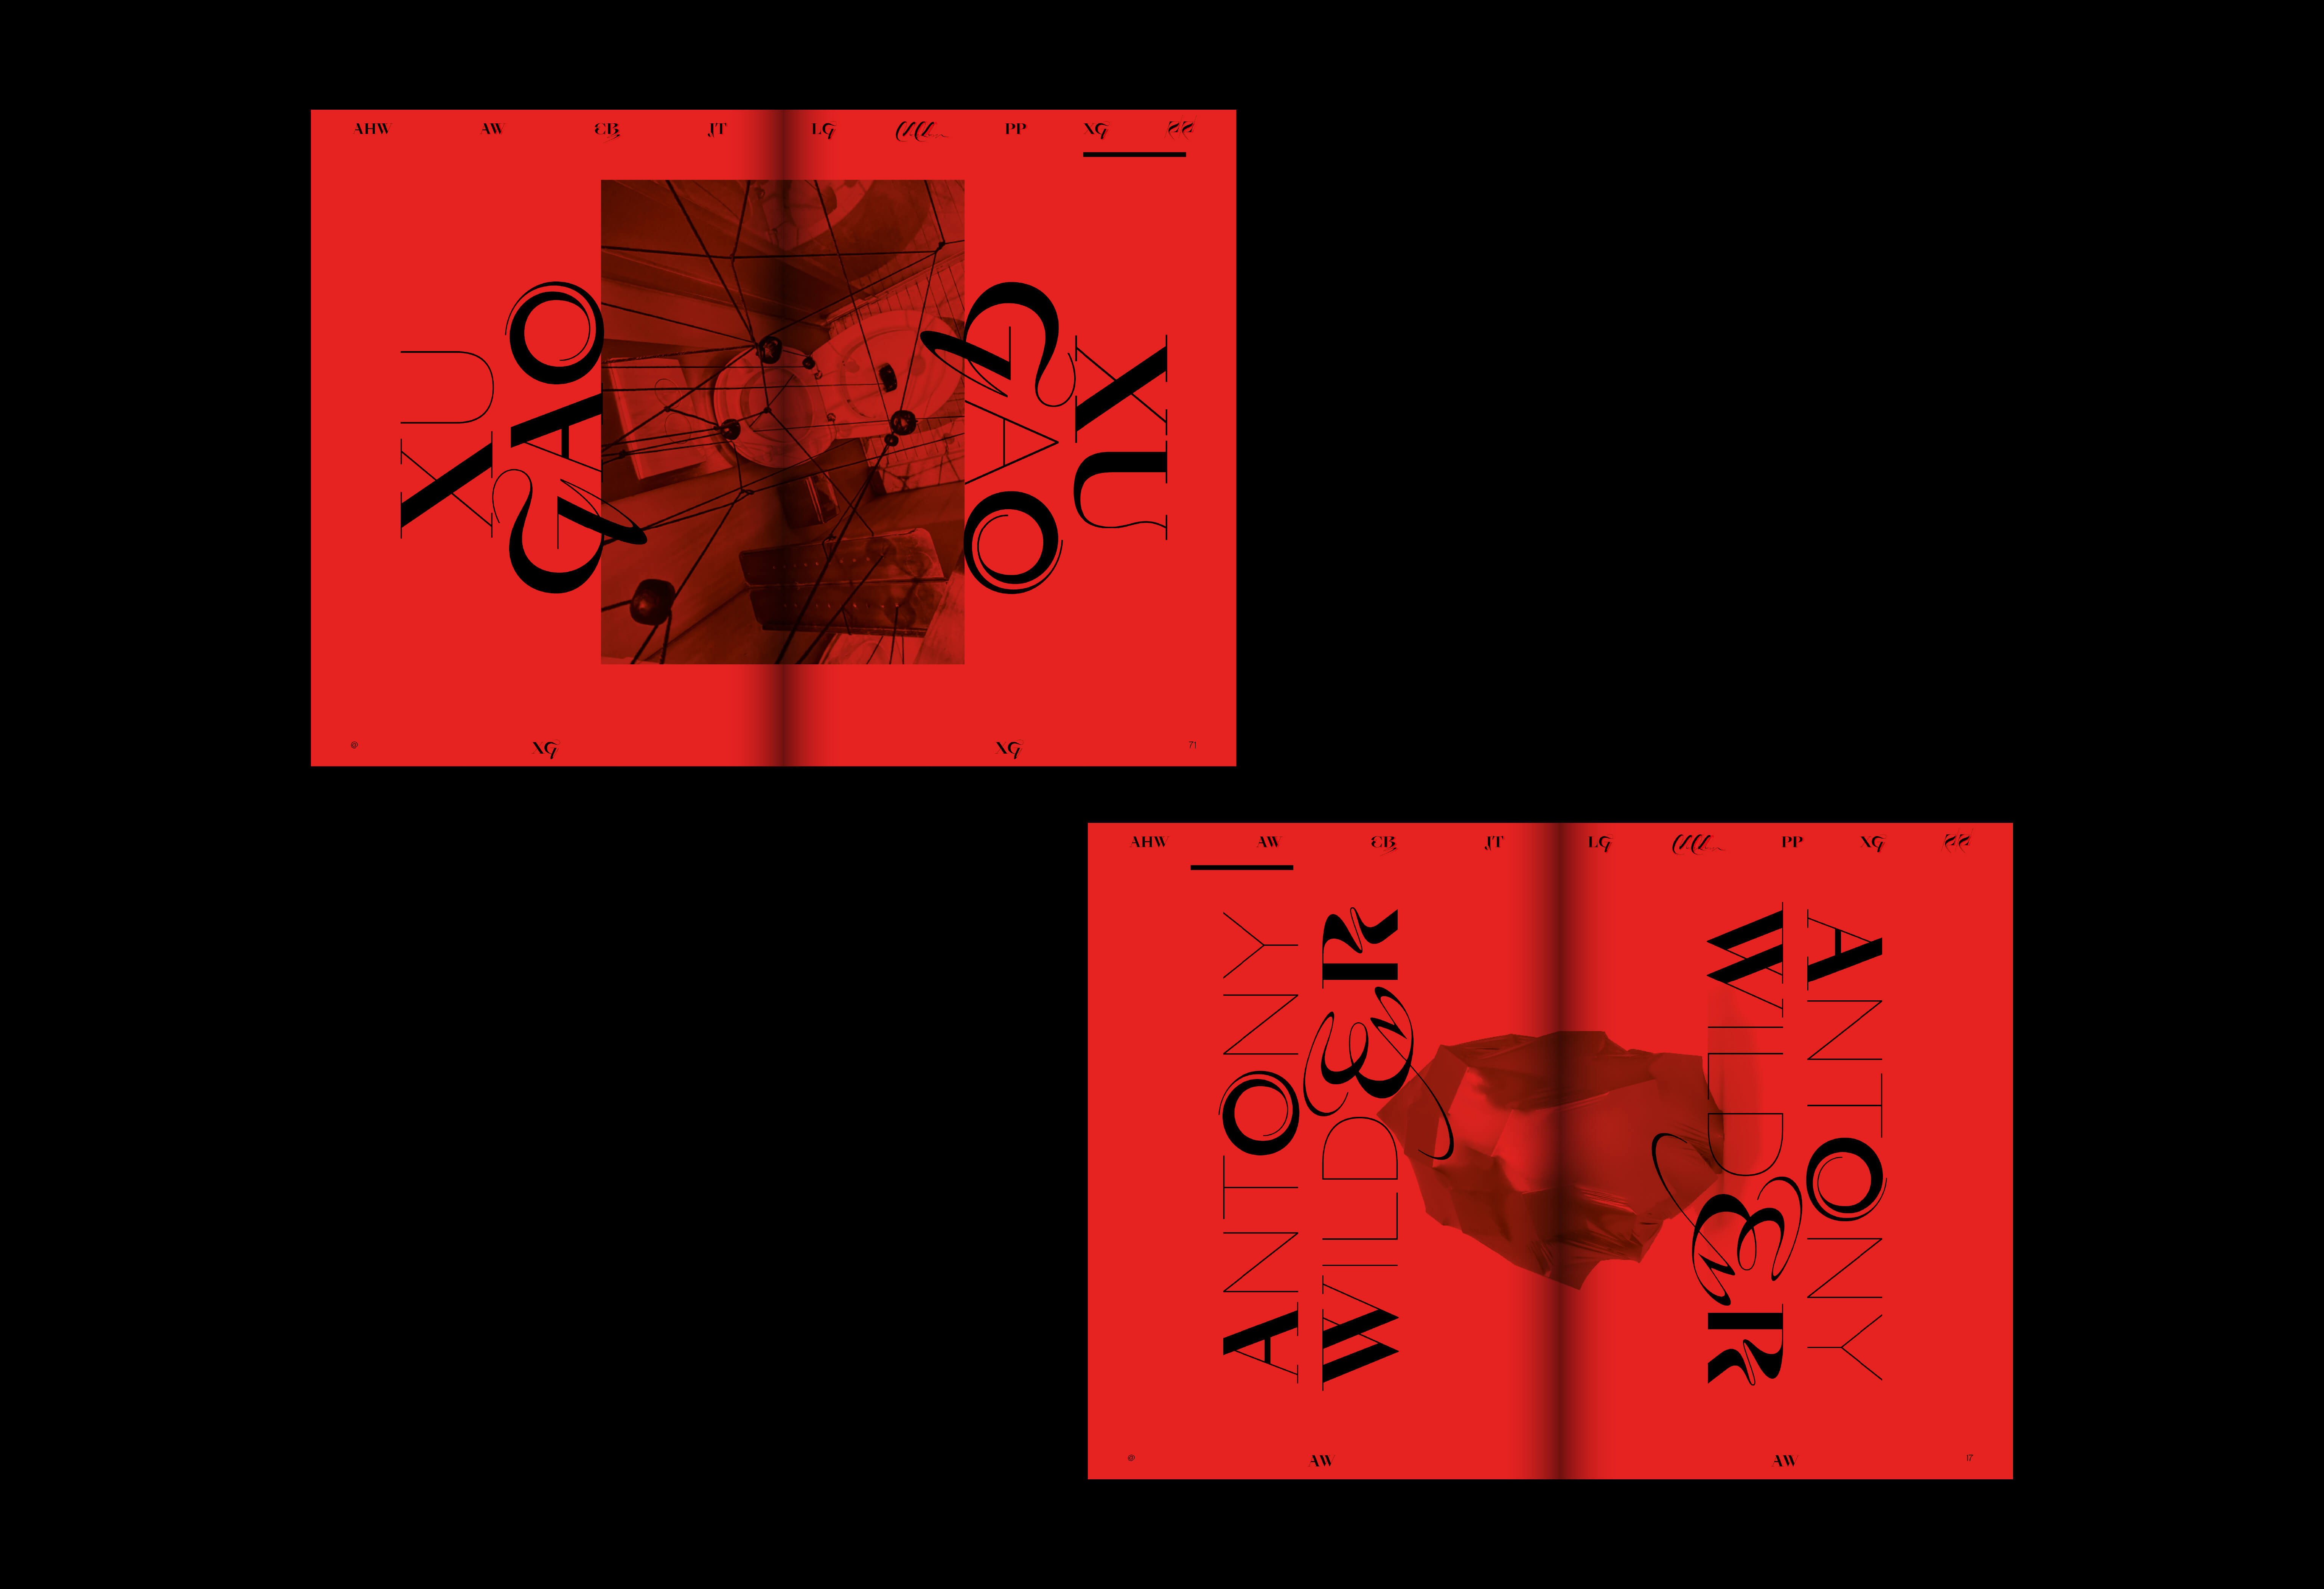 zwei rote Eröffnungsseiten aus einem Kunstkatalog / two red opening pages from an art catalog